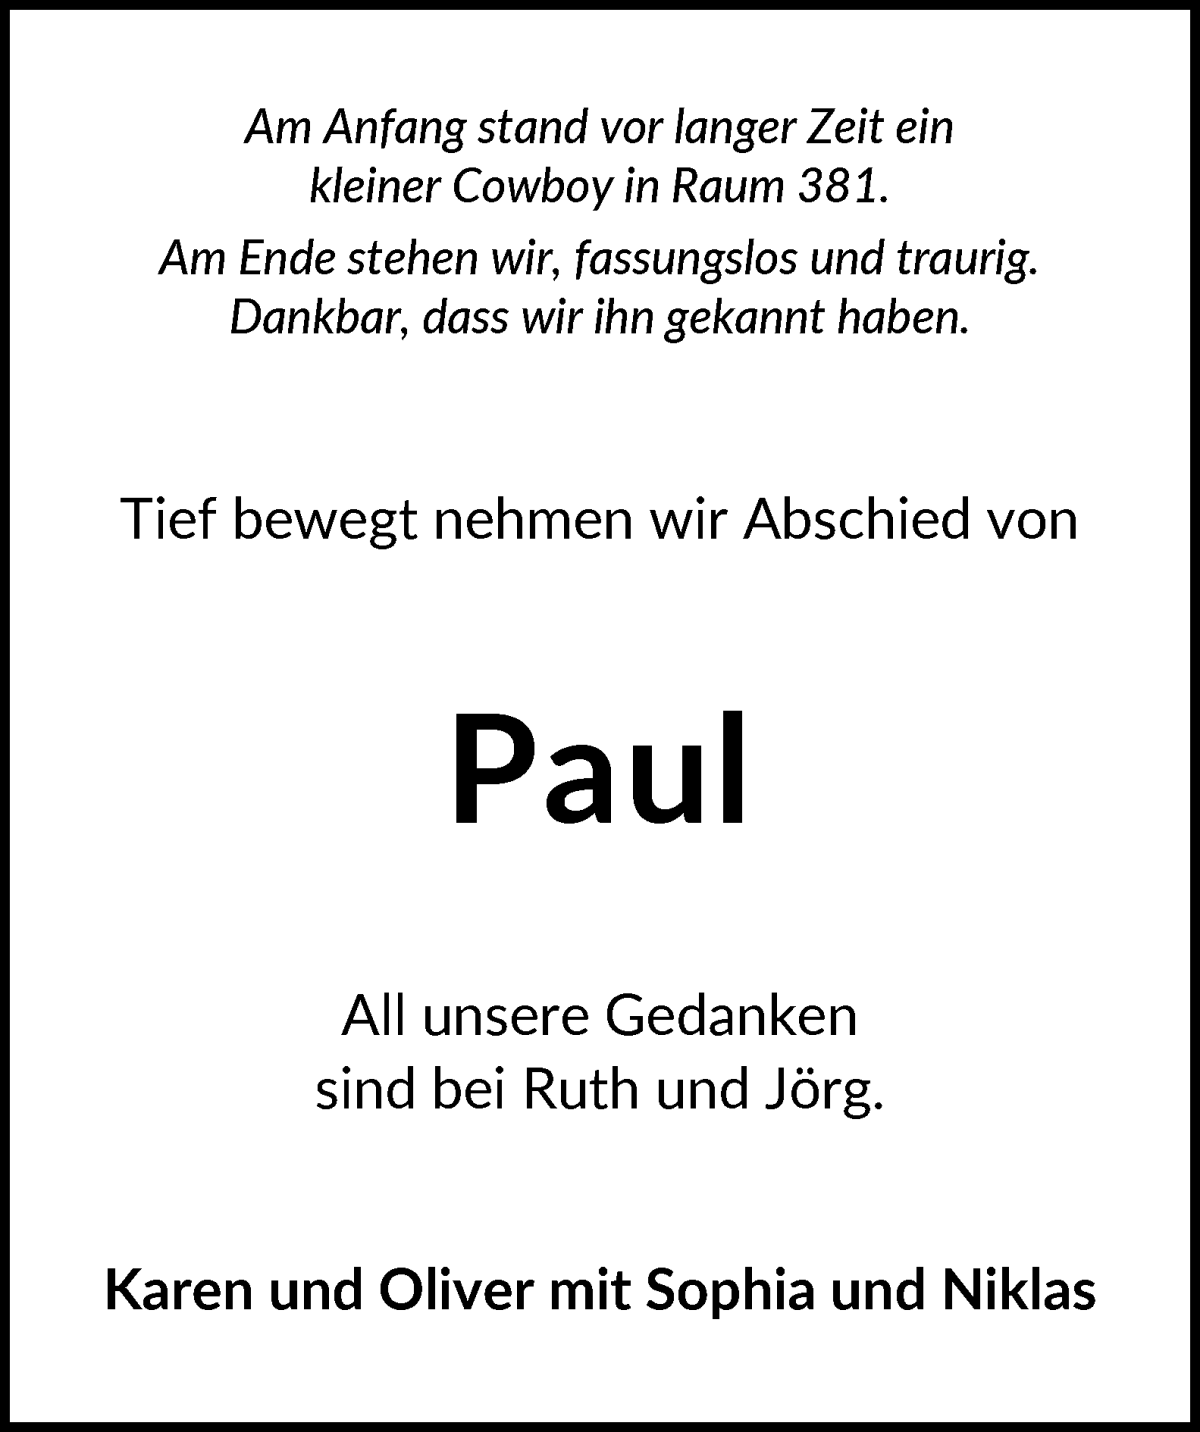  Traueranzeige für Paul Sarbach vom 10.02.2024 aus WESER-KURIER